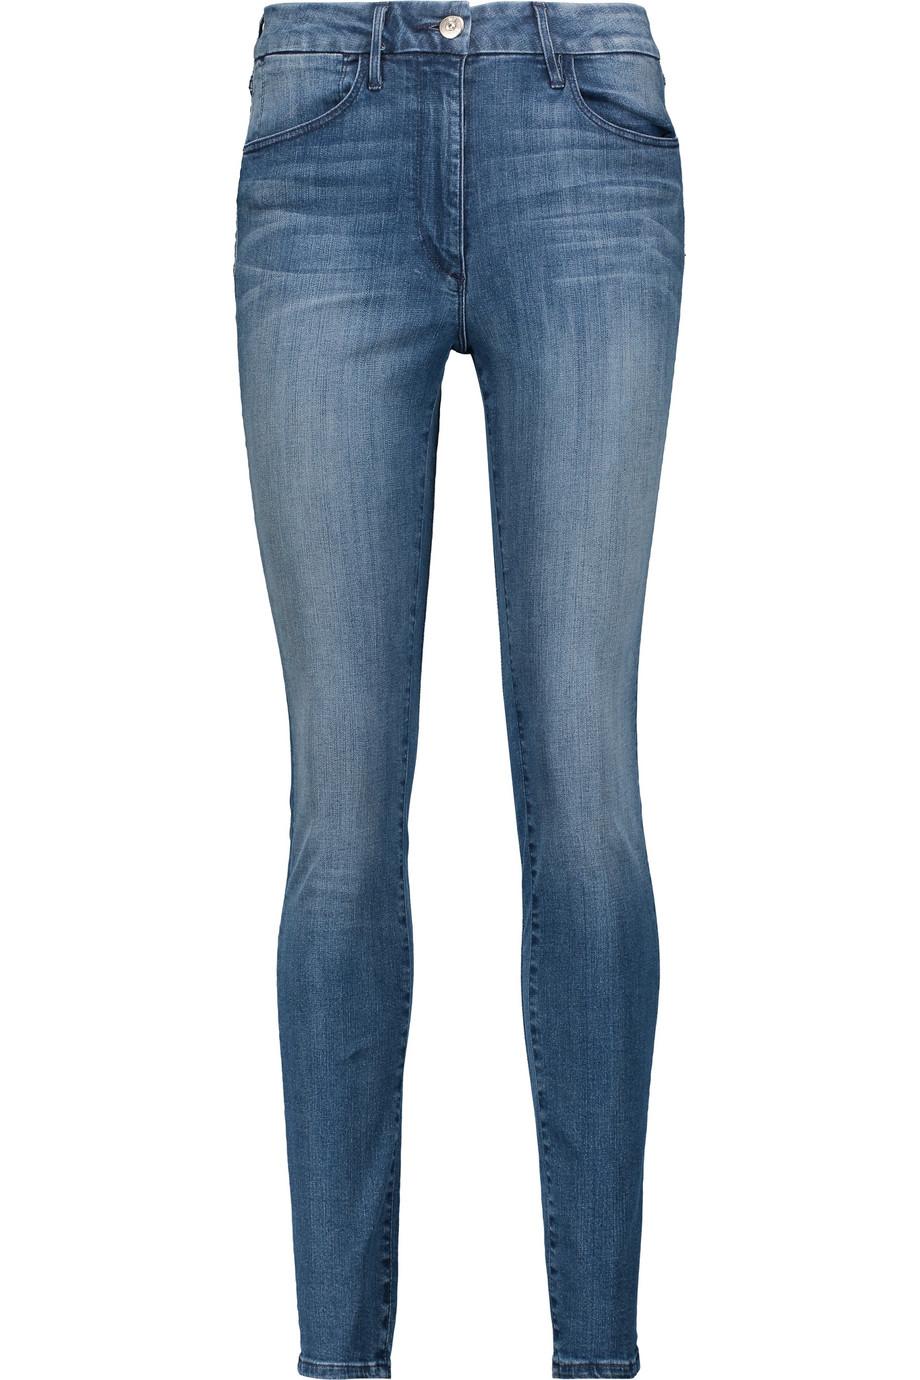 3x1 W3 Channel Skinny Jeans | ModeSens